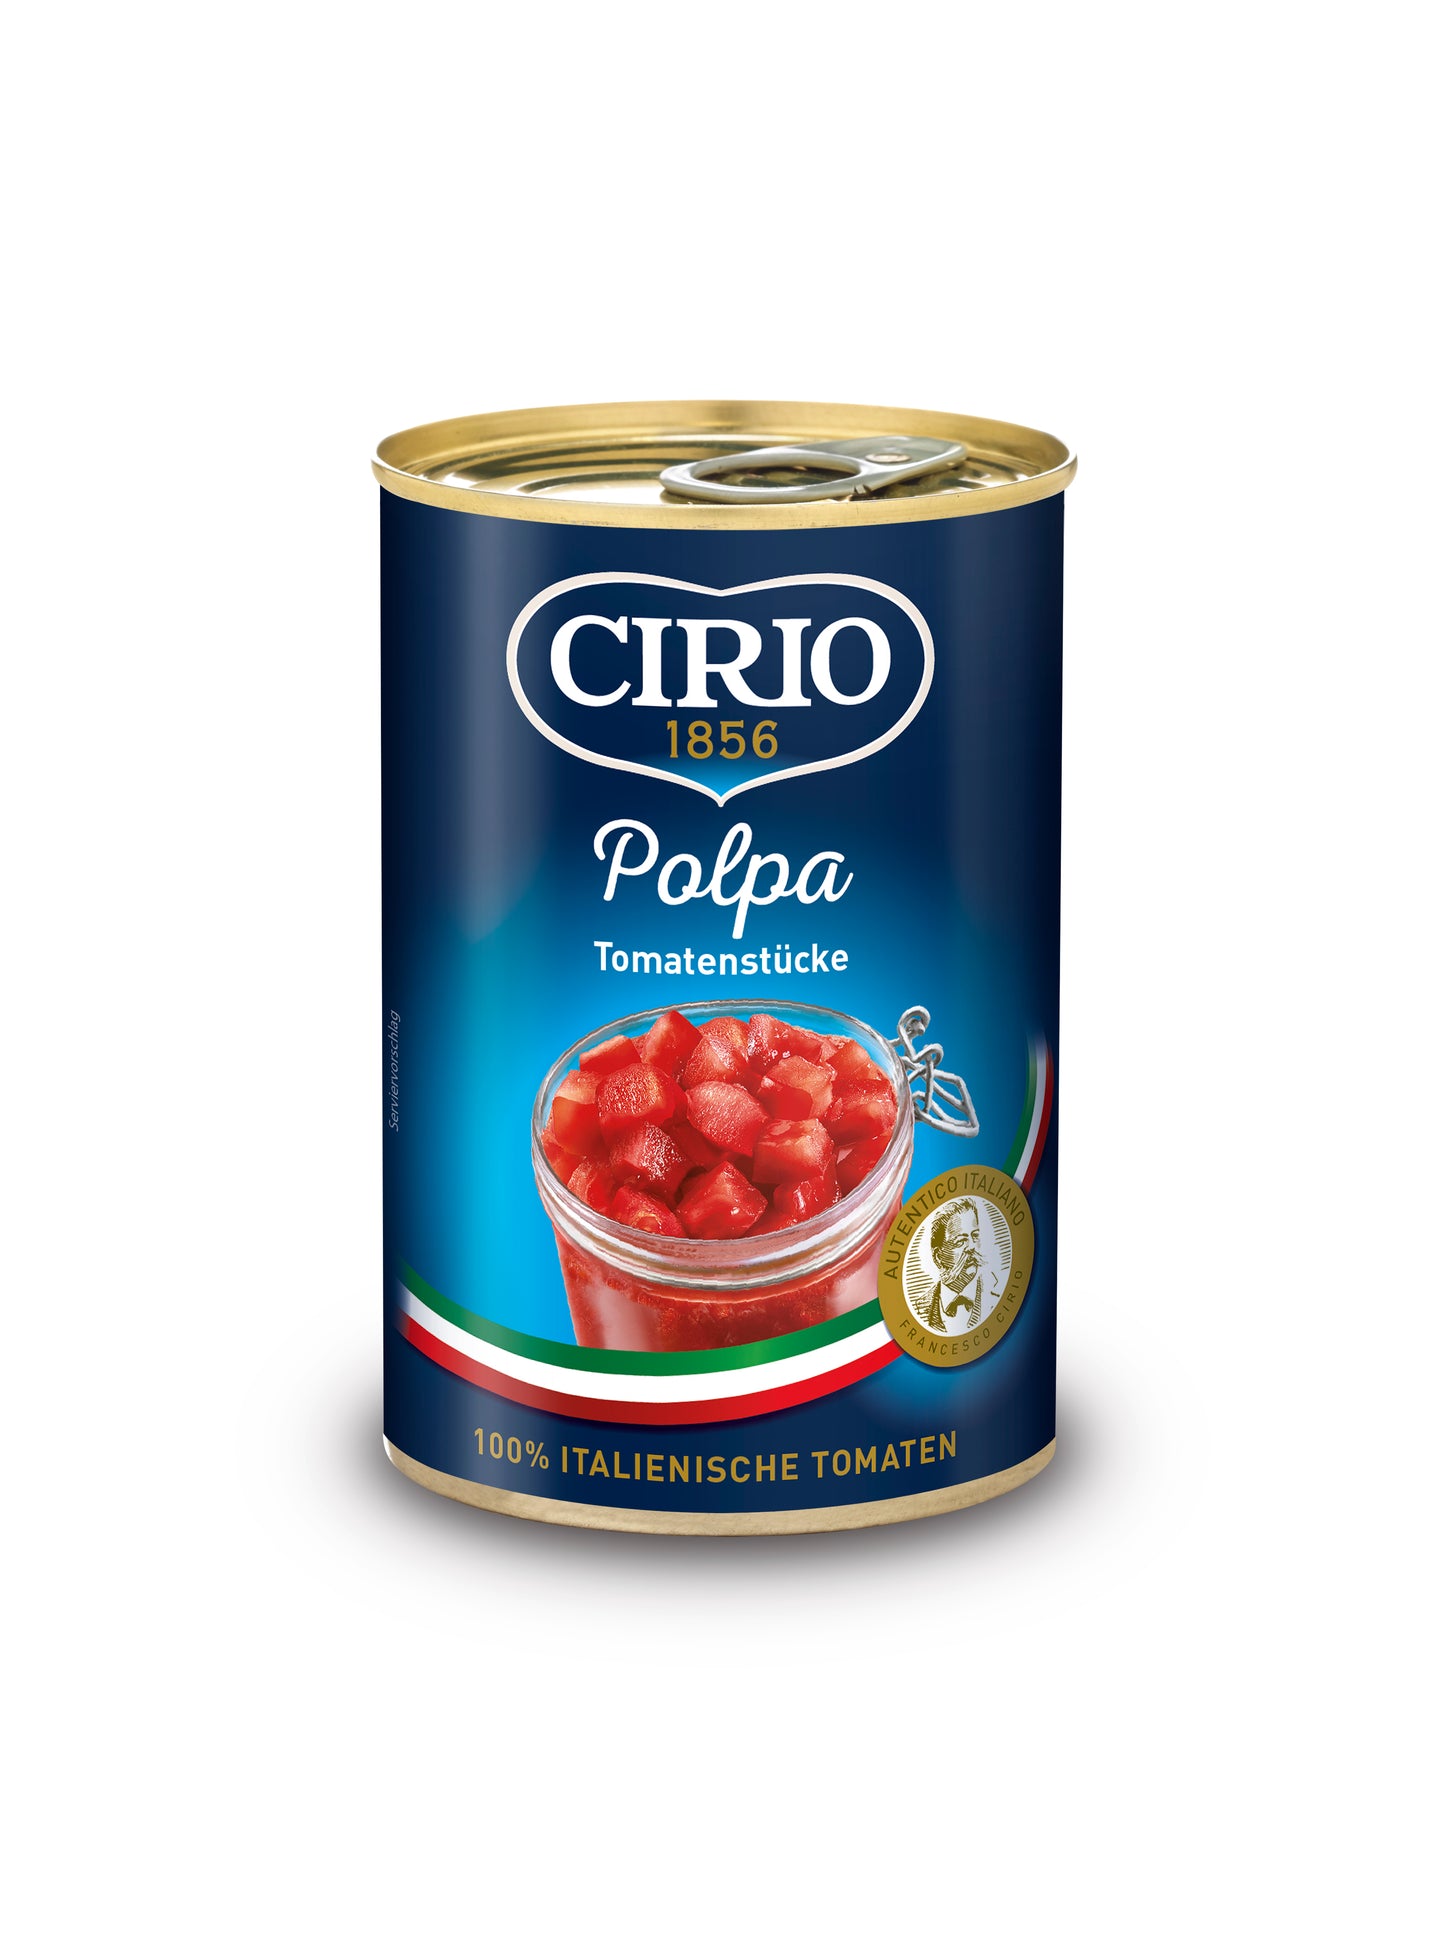 Cirio Polpa Tomatenstücke 400g